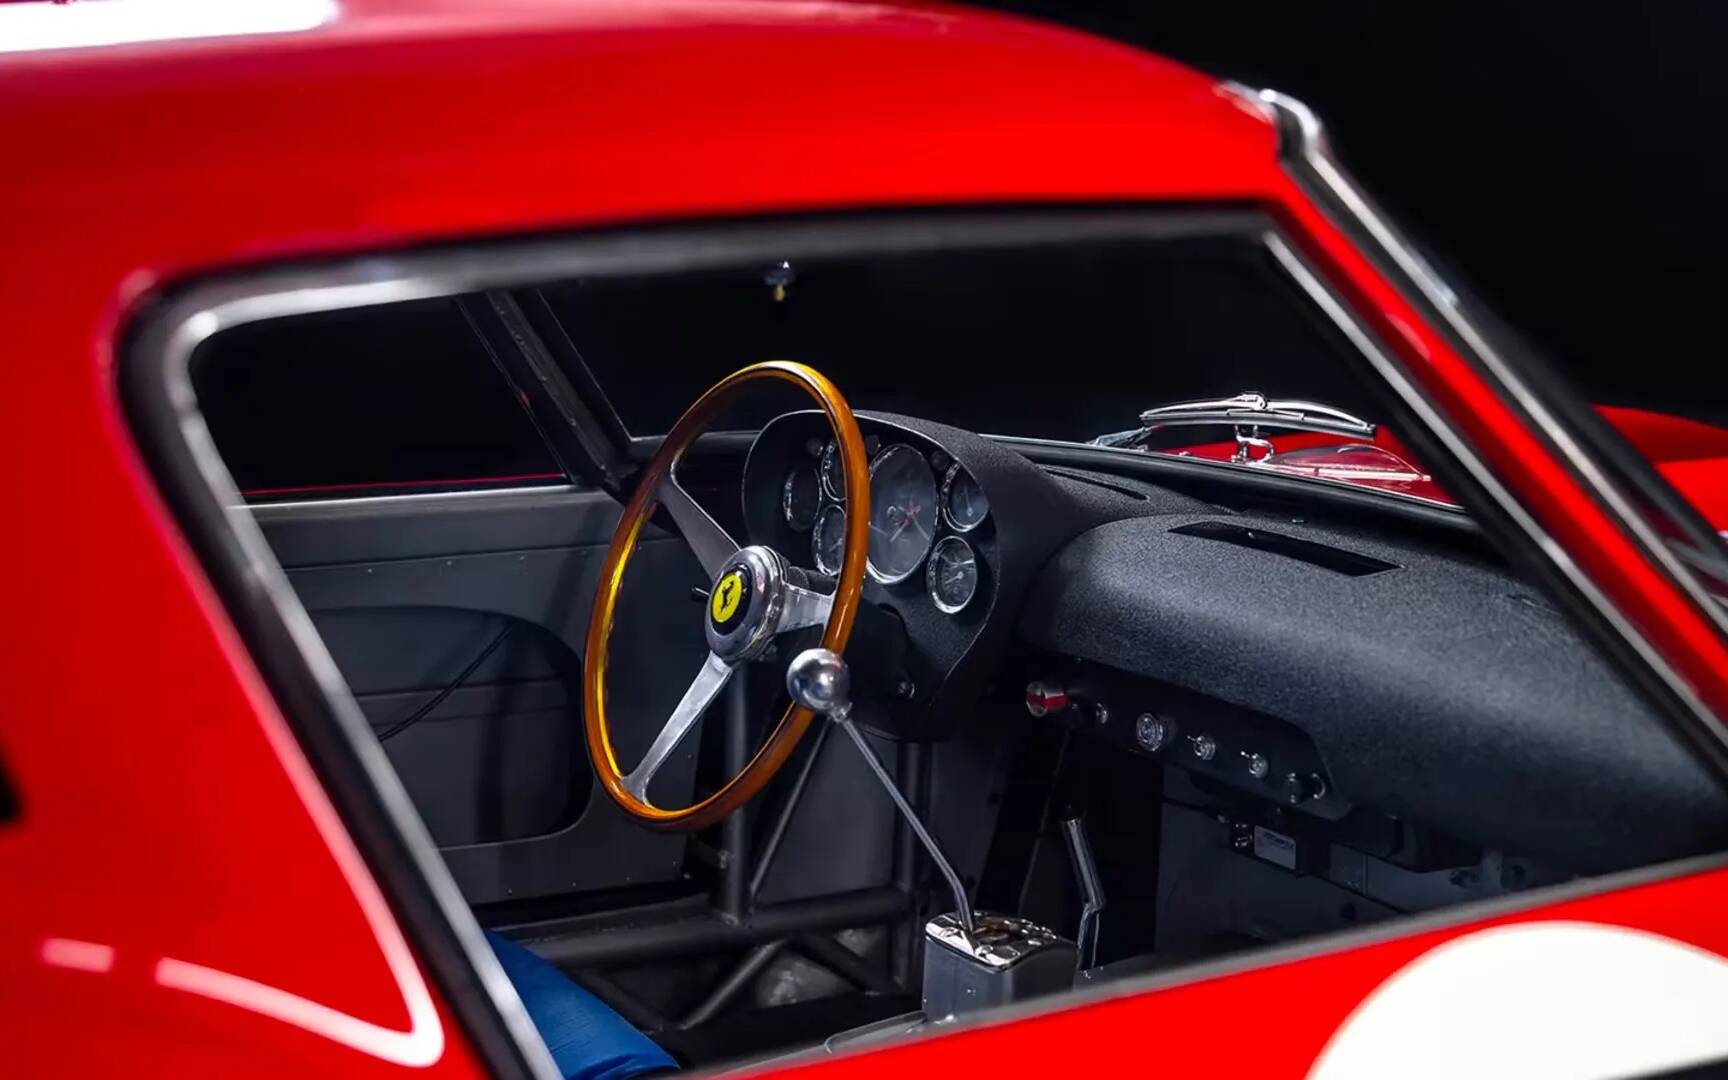 vendre - Cette Ferrari 330 LM 1962 pourrait se vendre 80 M$ à l’encan 587552-cette-ferrari-330-lm-1962-pourrait-se-vendre-80-m-a-l-encan